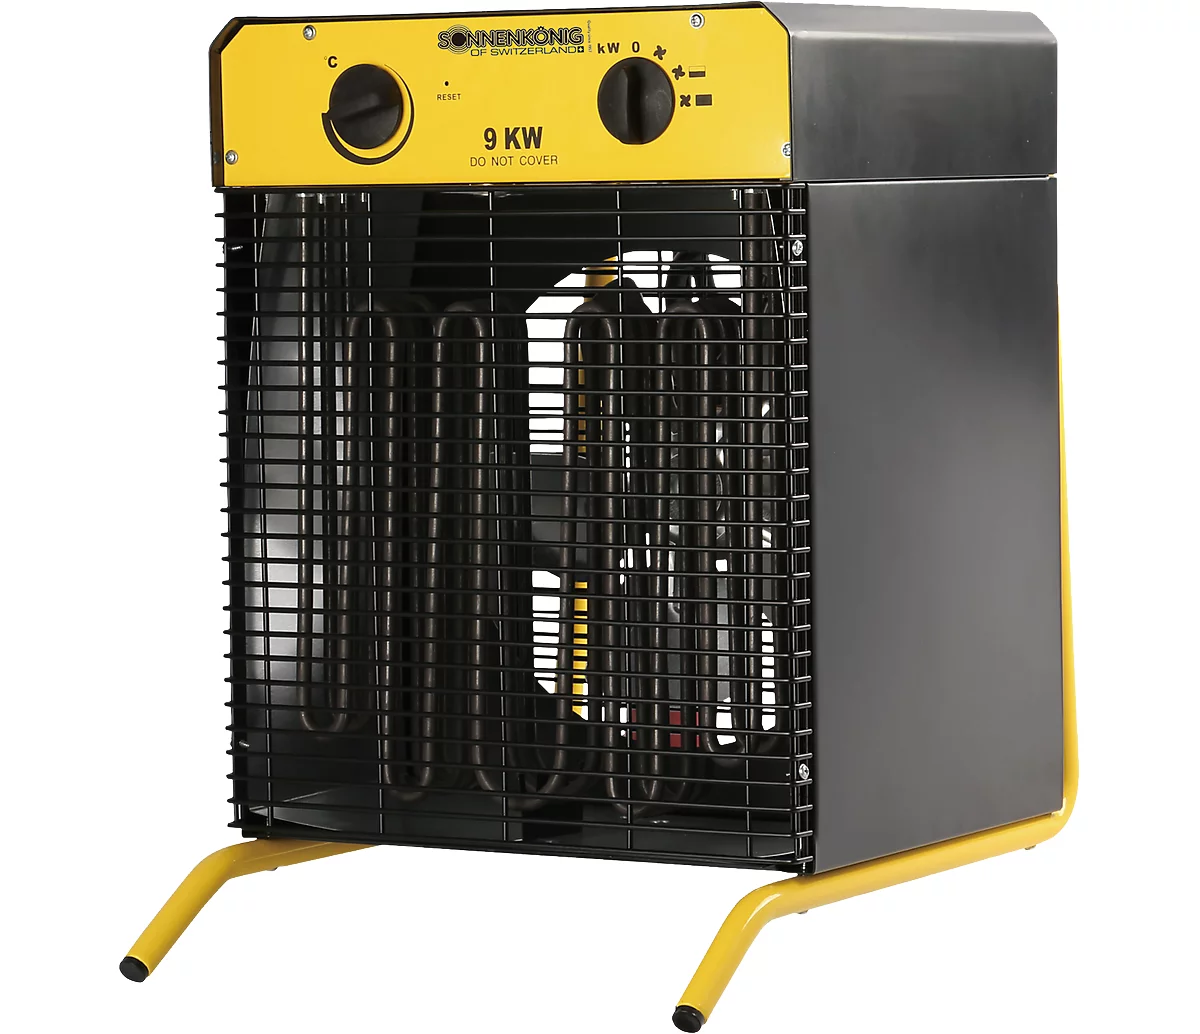 Termoventilador Ventus 900, potencia de funcionamiento, 9000 W, para habitaciones de hasta 180 m³, 2 ajustes de calor, 1 ajuste de ventilador, termostato, protección contra sobrecalentamiento, IPX4